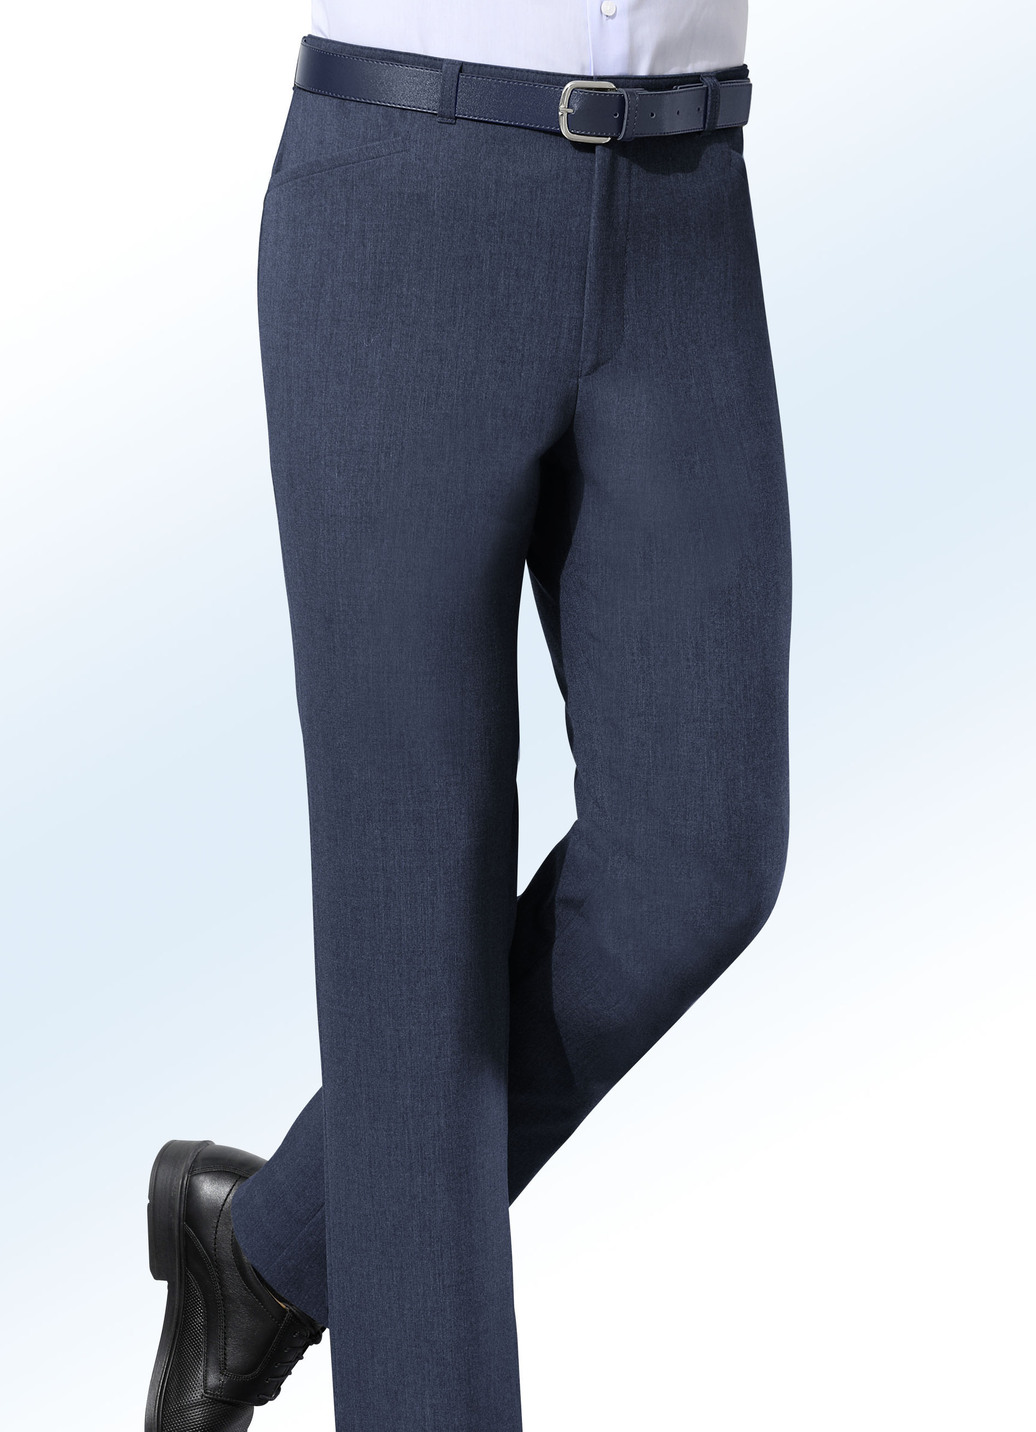 "Klaus-Modelle"-Hose mit Gürtel in 5 Farben, Marine, Größe 27 von KLAUS MODELLE